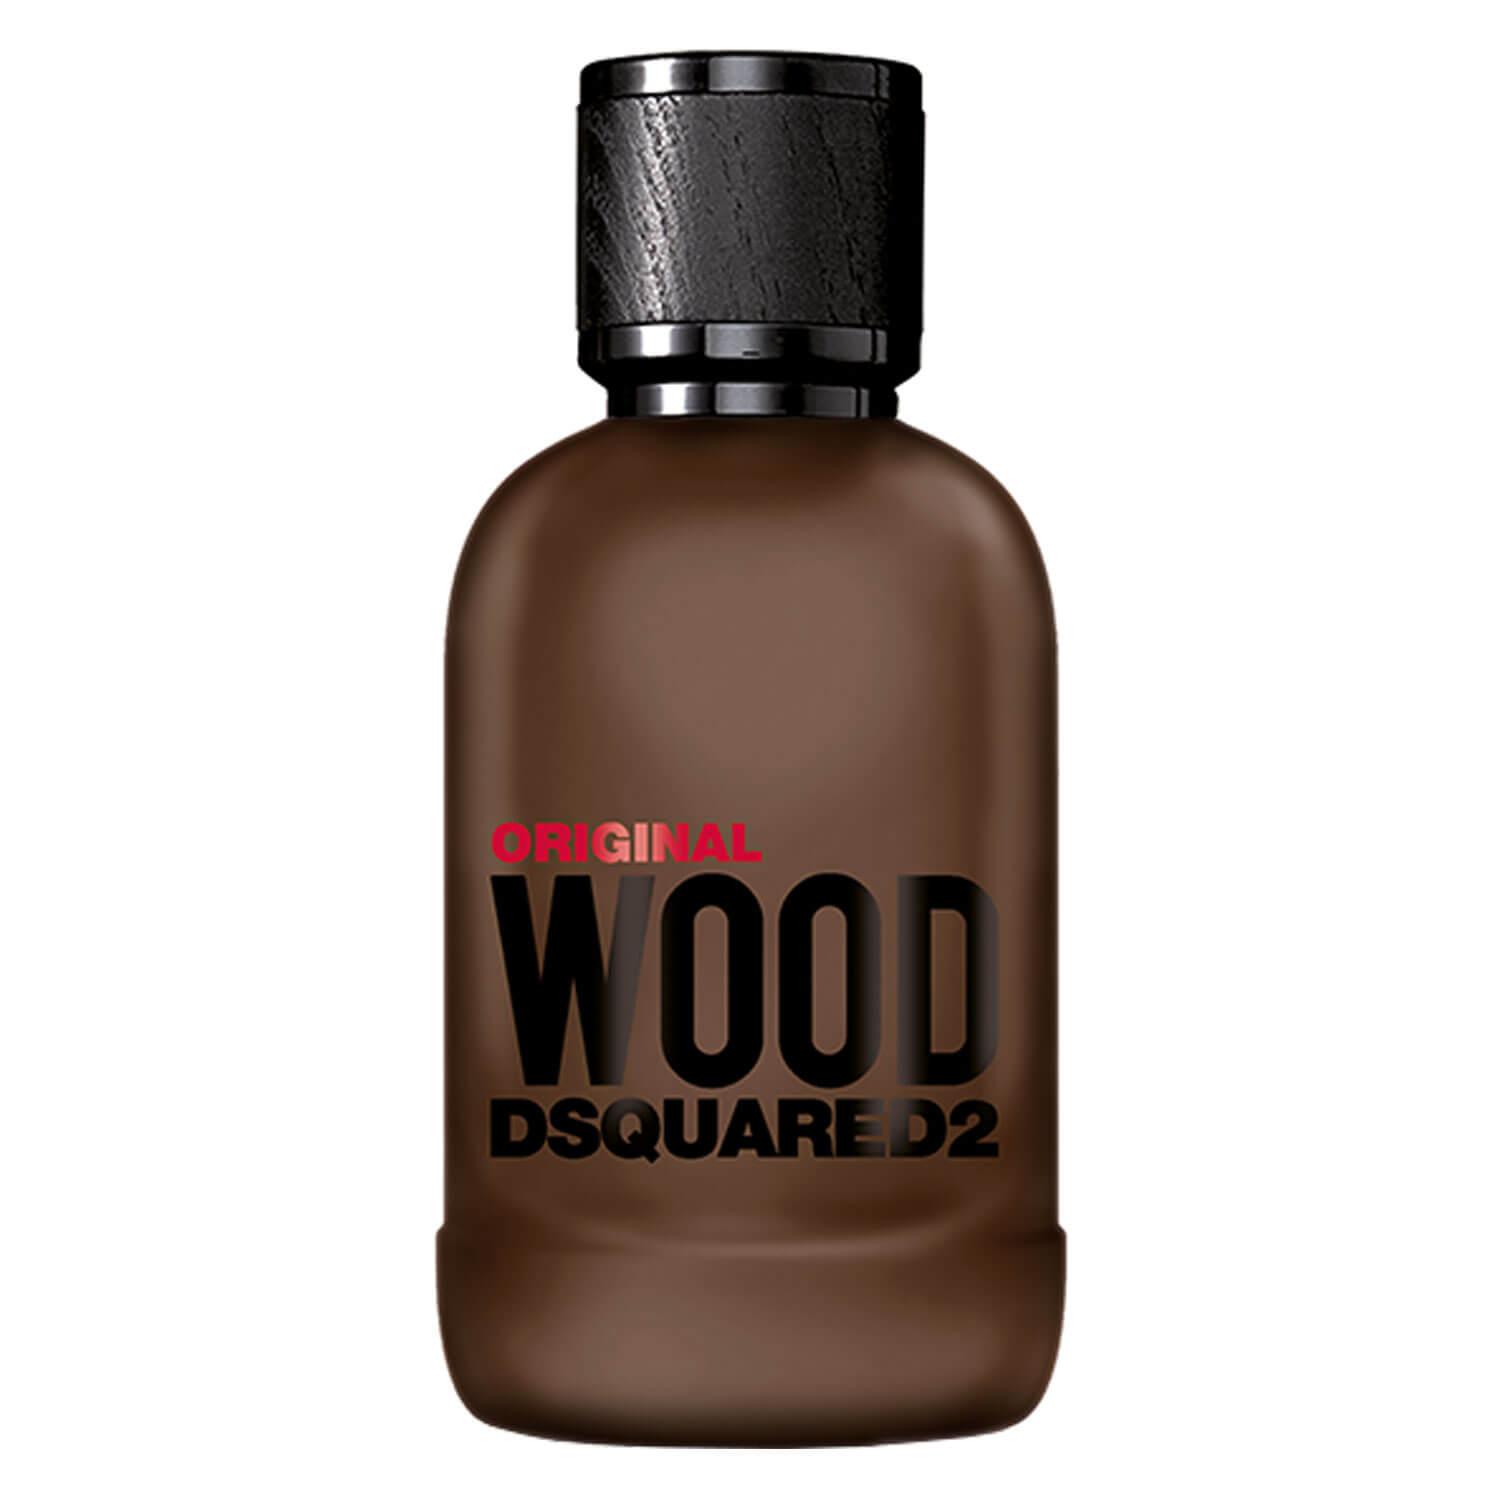 DSQUARED2 WOOD - Original Wood Eau de Parfum